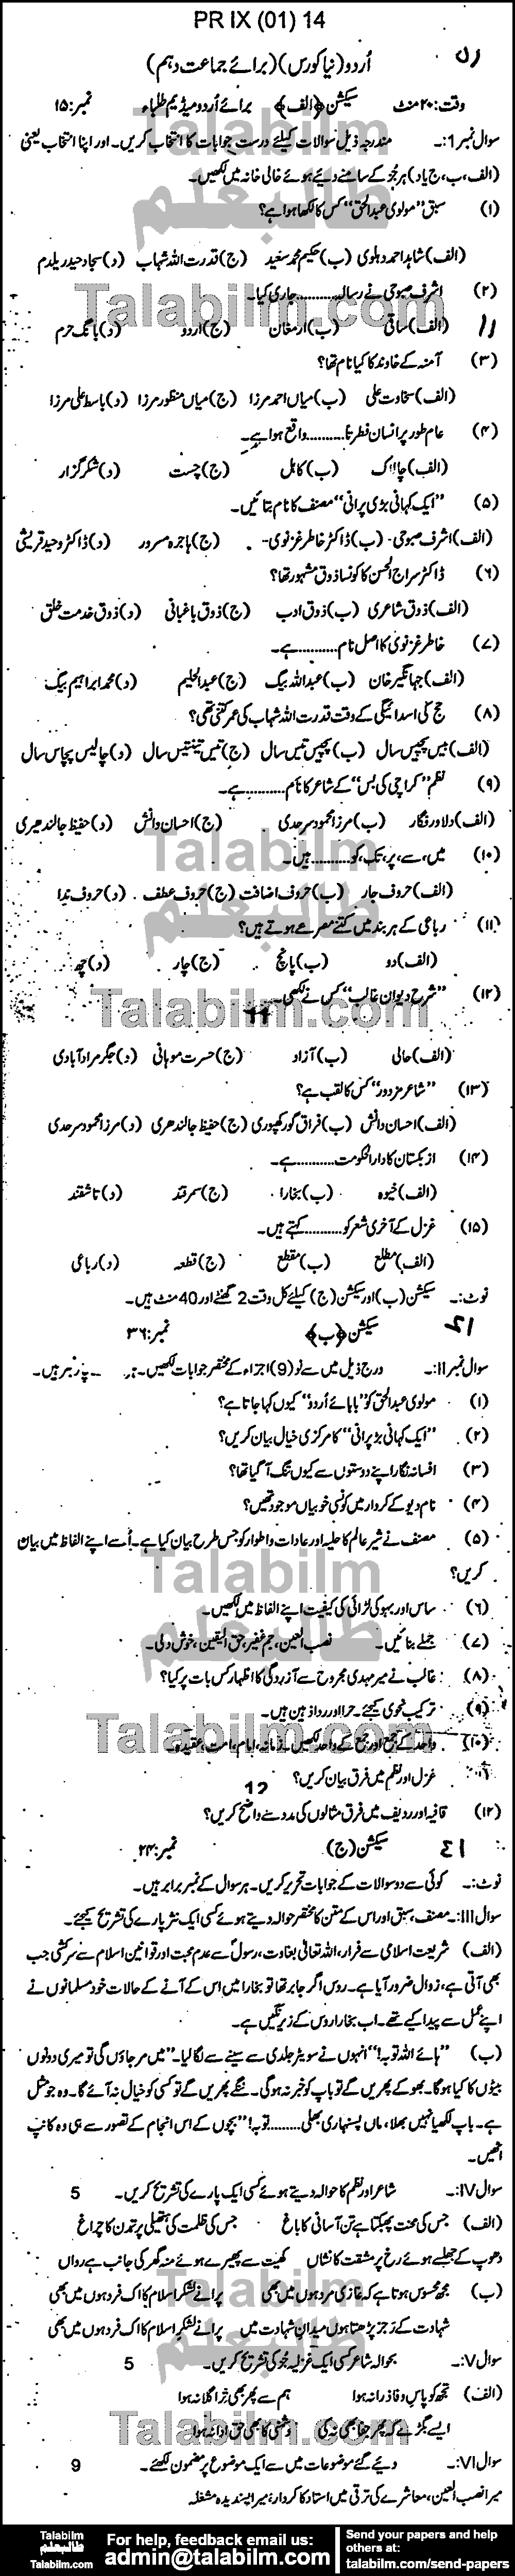 Urdu 0 past paper for Urdu Medium 2014 Group-I